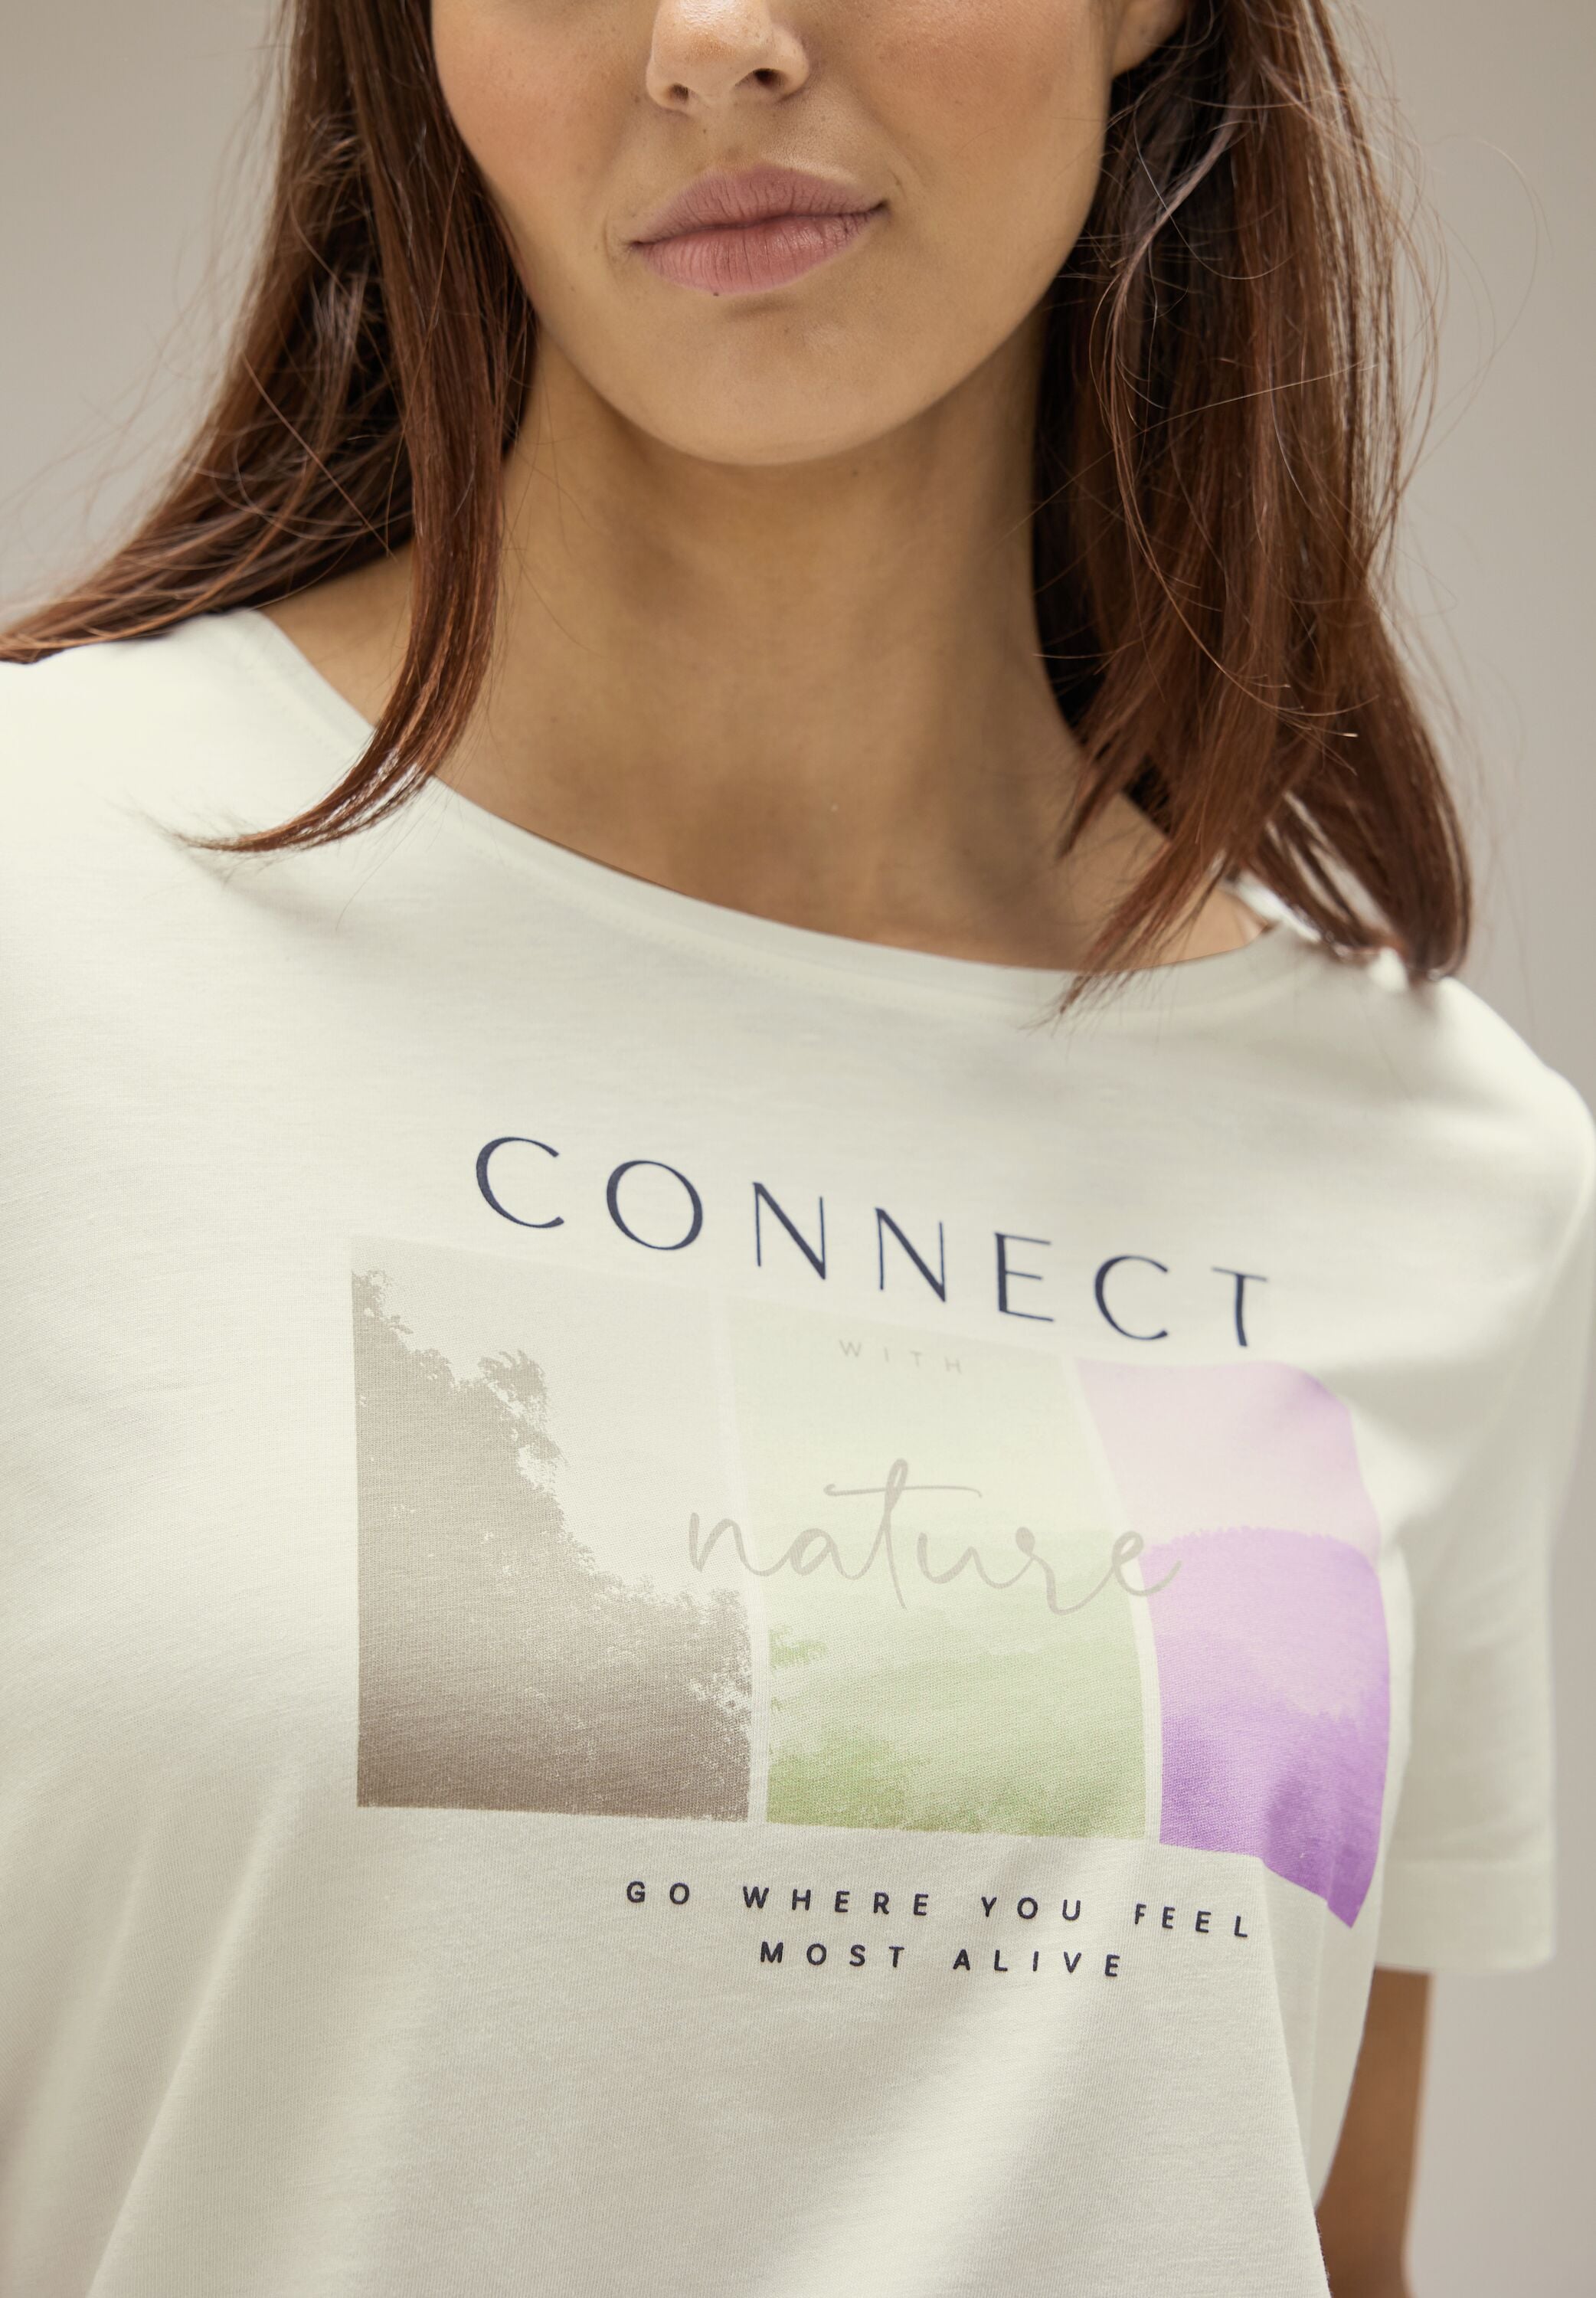 ONE online und STREET Wording mit T-Shirt, Fotoprint